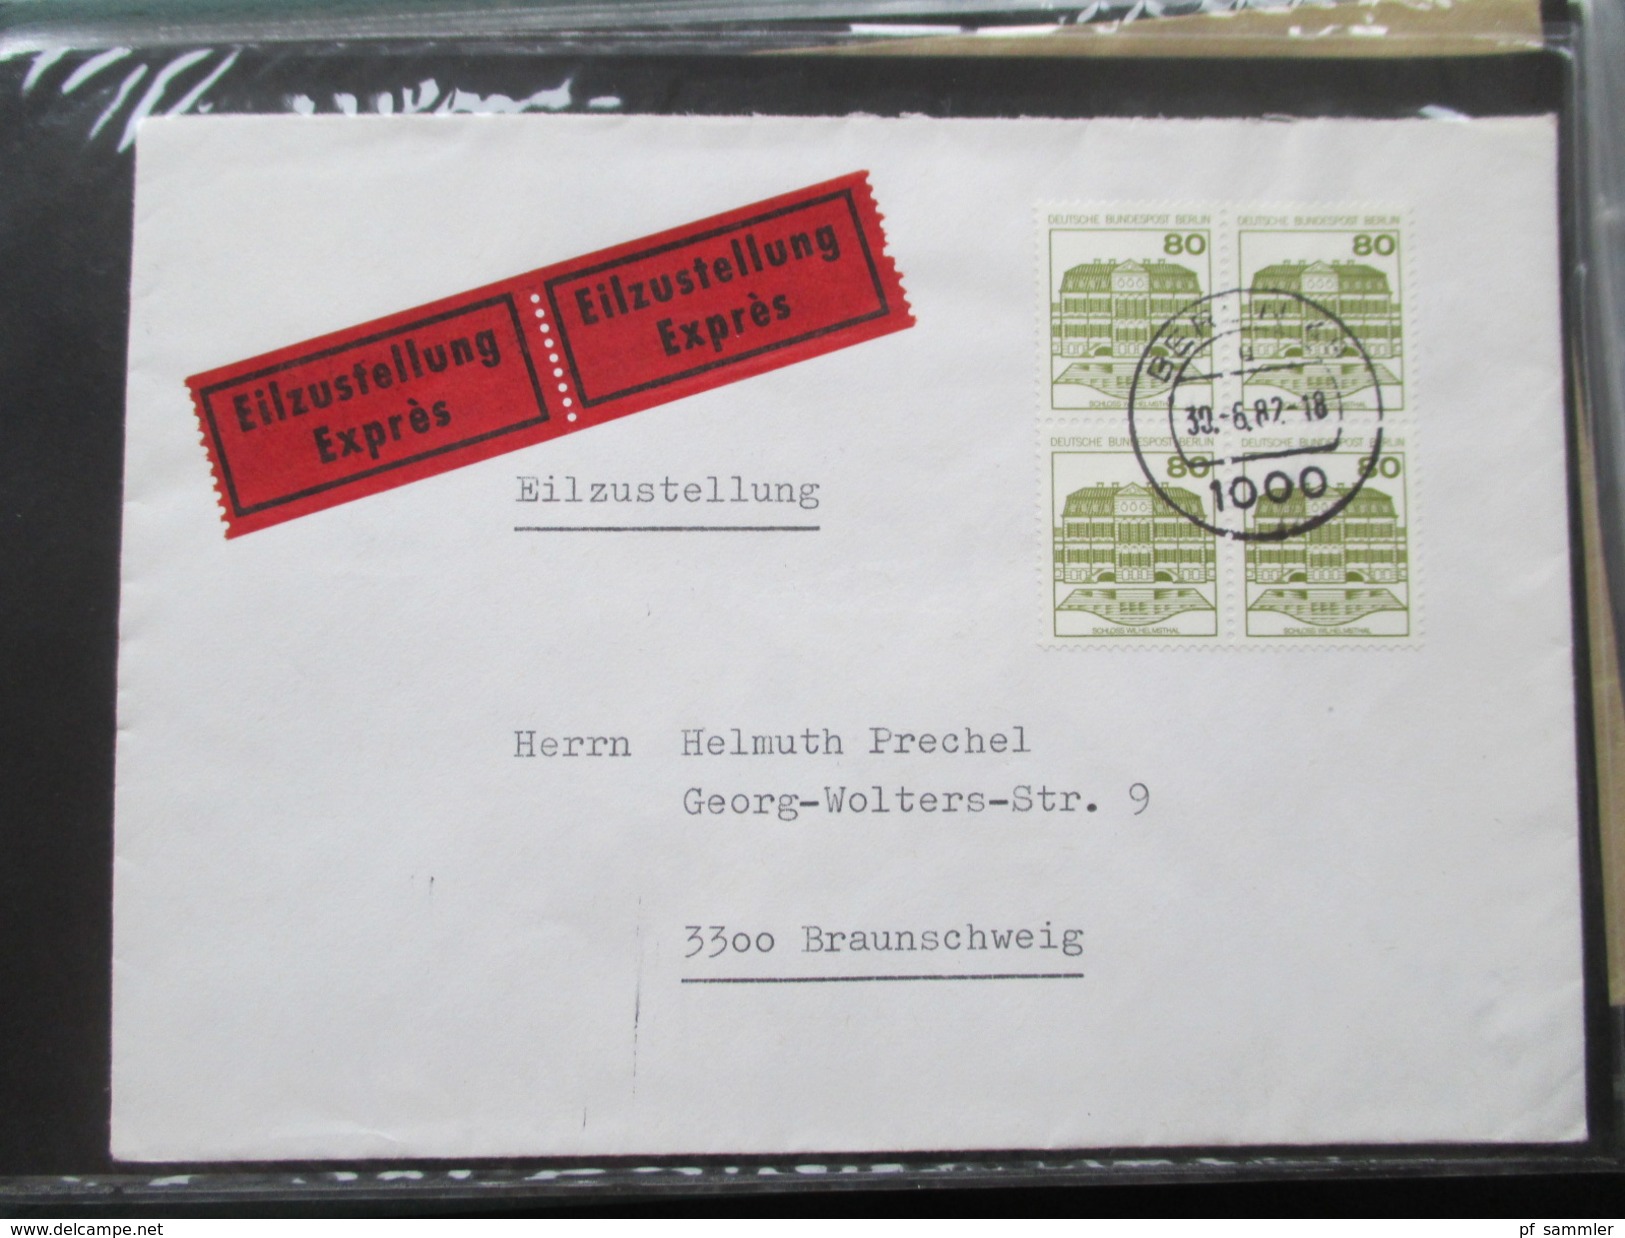 Berlin FDC / Bedarf 1953 - 1991 Fast alles portogerecht + Berlin Stempel! Kehrdrucke / HAN / Paare Sehr spannend! 88 stk